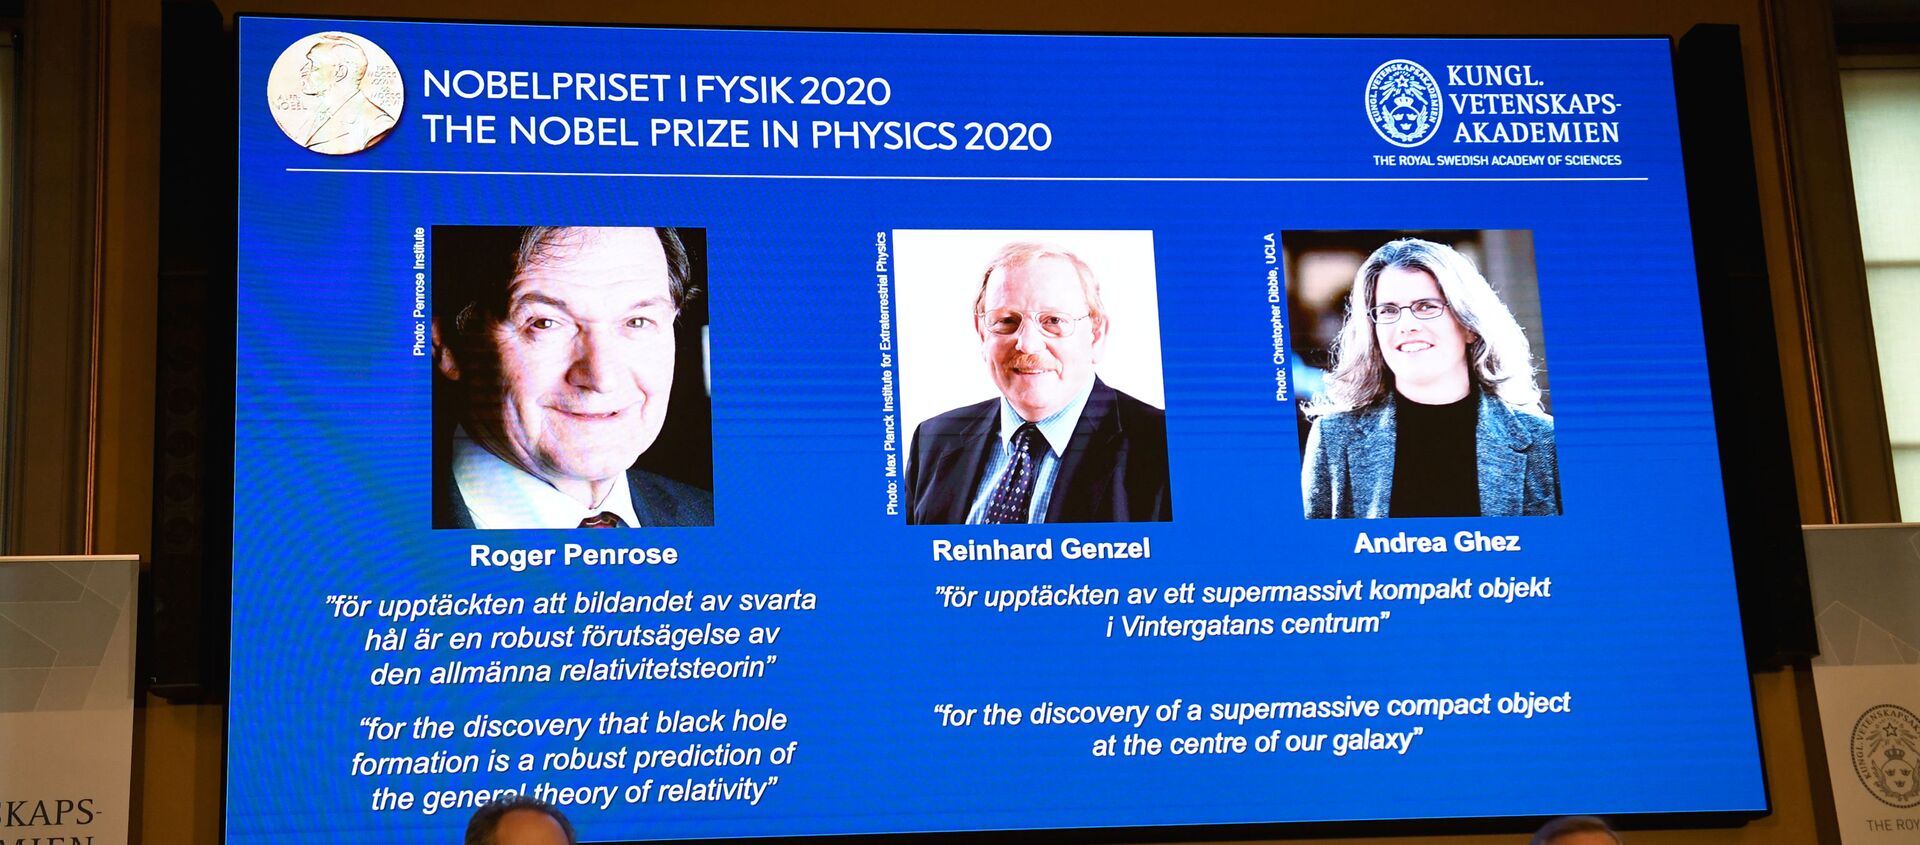 جائزة نوبل في الفيزياء لعام 2020، تُمنح بالمناصفة بين العالم روجر بنروز والعالمين رينهارد جينزل وأندريا جيز، لاكتشافهم أحد أعظم أسرار الكون، التي تتعلق بالثقوب السوداء، 6 أكتوبر 2020 - سبوتنيك عربي, 1920, 06.10.2020